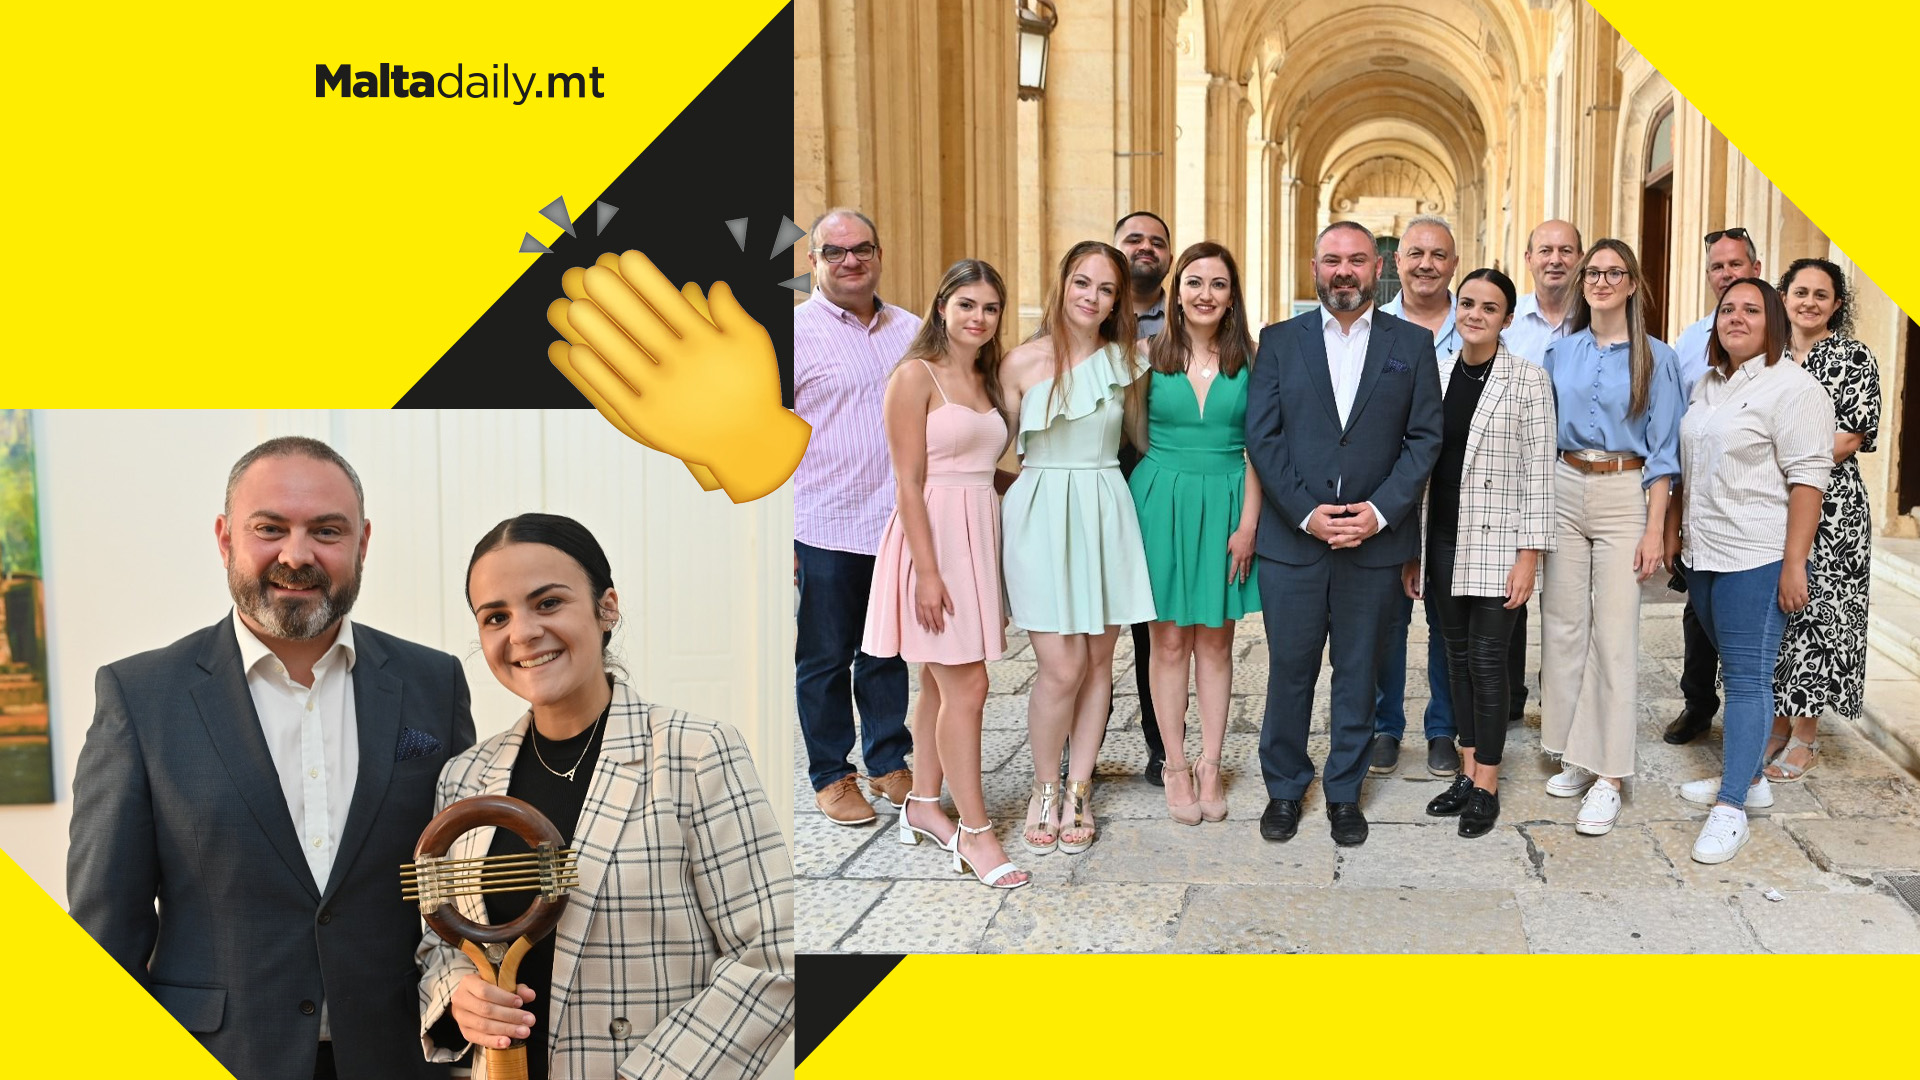 Għanja tal-Poplu team & winners receive praise from Minister Owen Bonnici